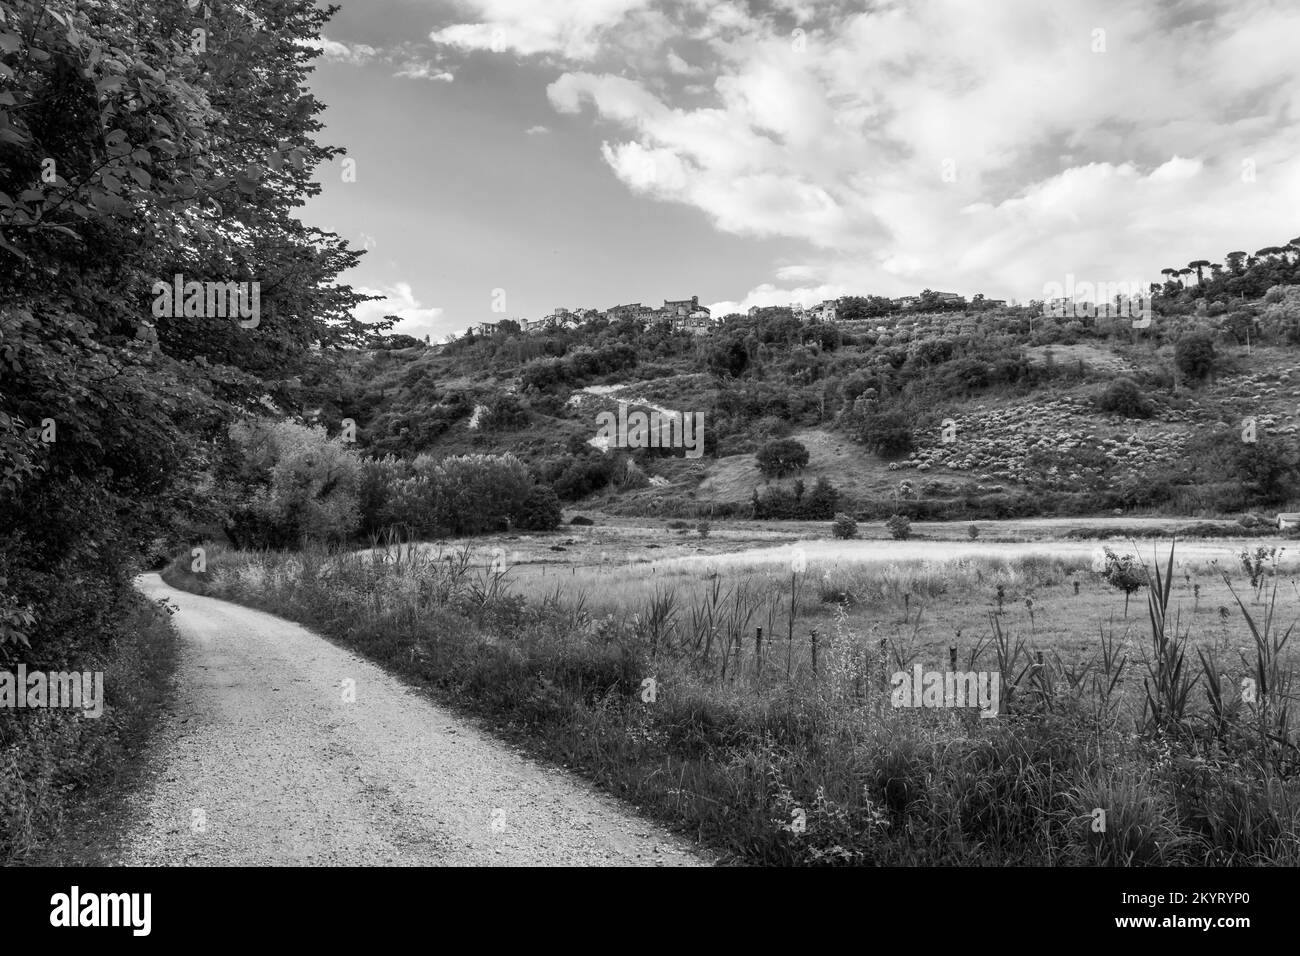 Réserve naturelle Tevere Farfa (Nazzano, Italie) - Vue sur le parc naturel avec le Tibre dans la province de Rome, Sabina, Italie centrale, à Nazzano Romano Banque D'Images